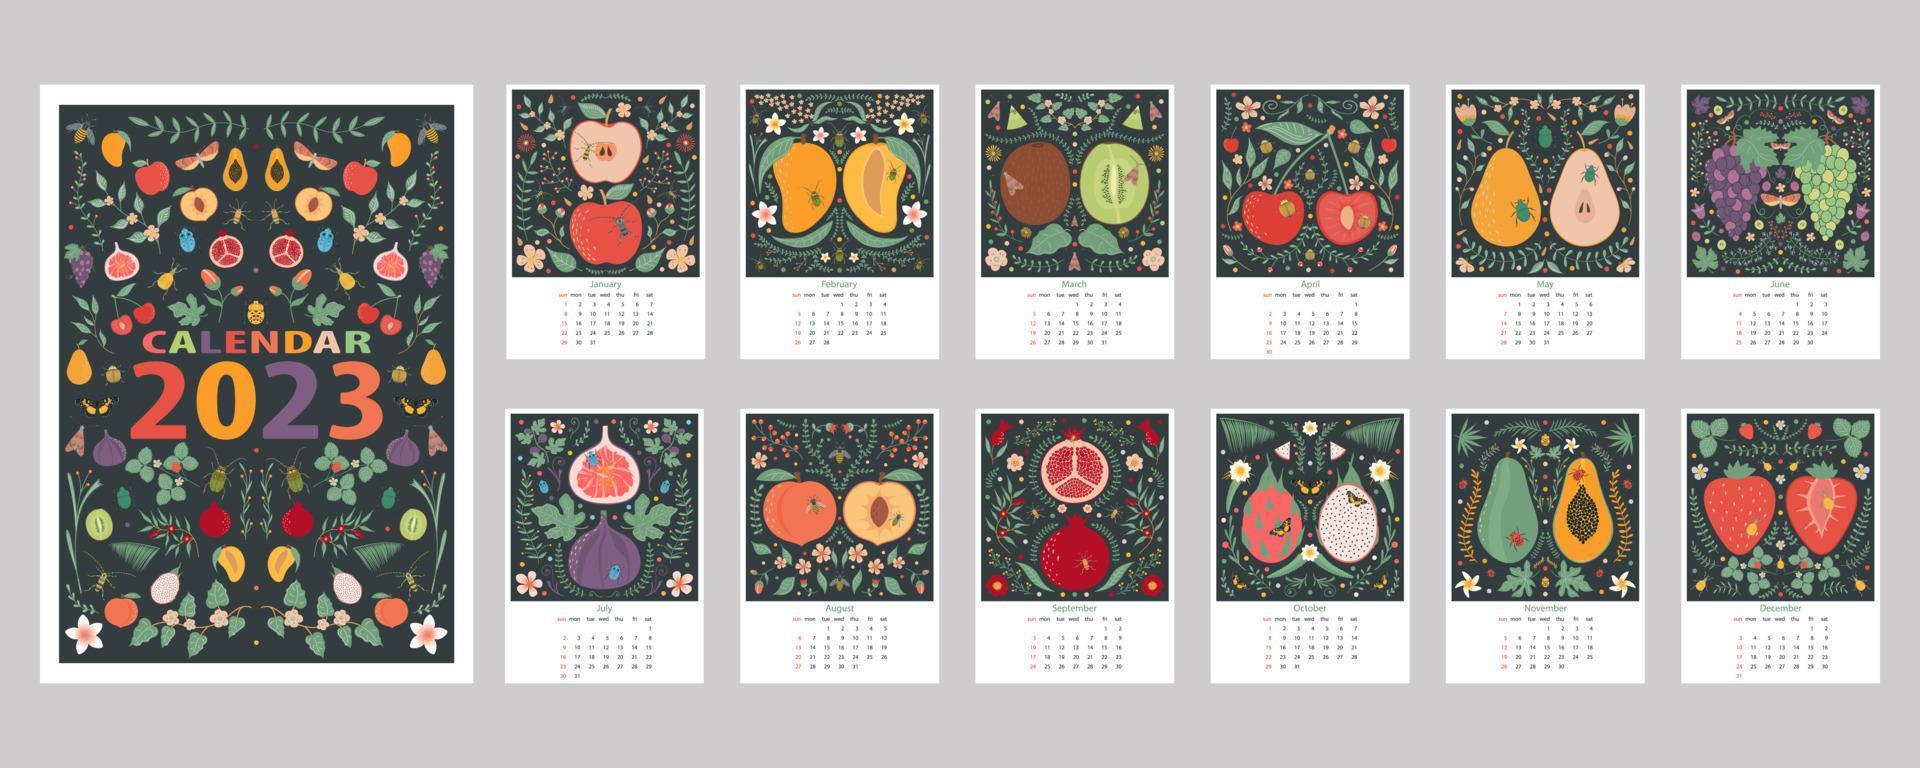 calendrier 2023. conception de calendrier avec fruits, insectes et éléments floraux. ensemble de pages pour 12 mois de 2023. illustration vectorielle. vecteur